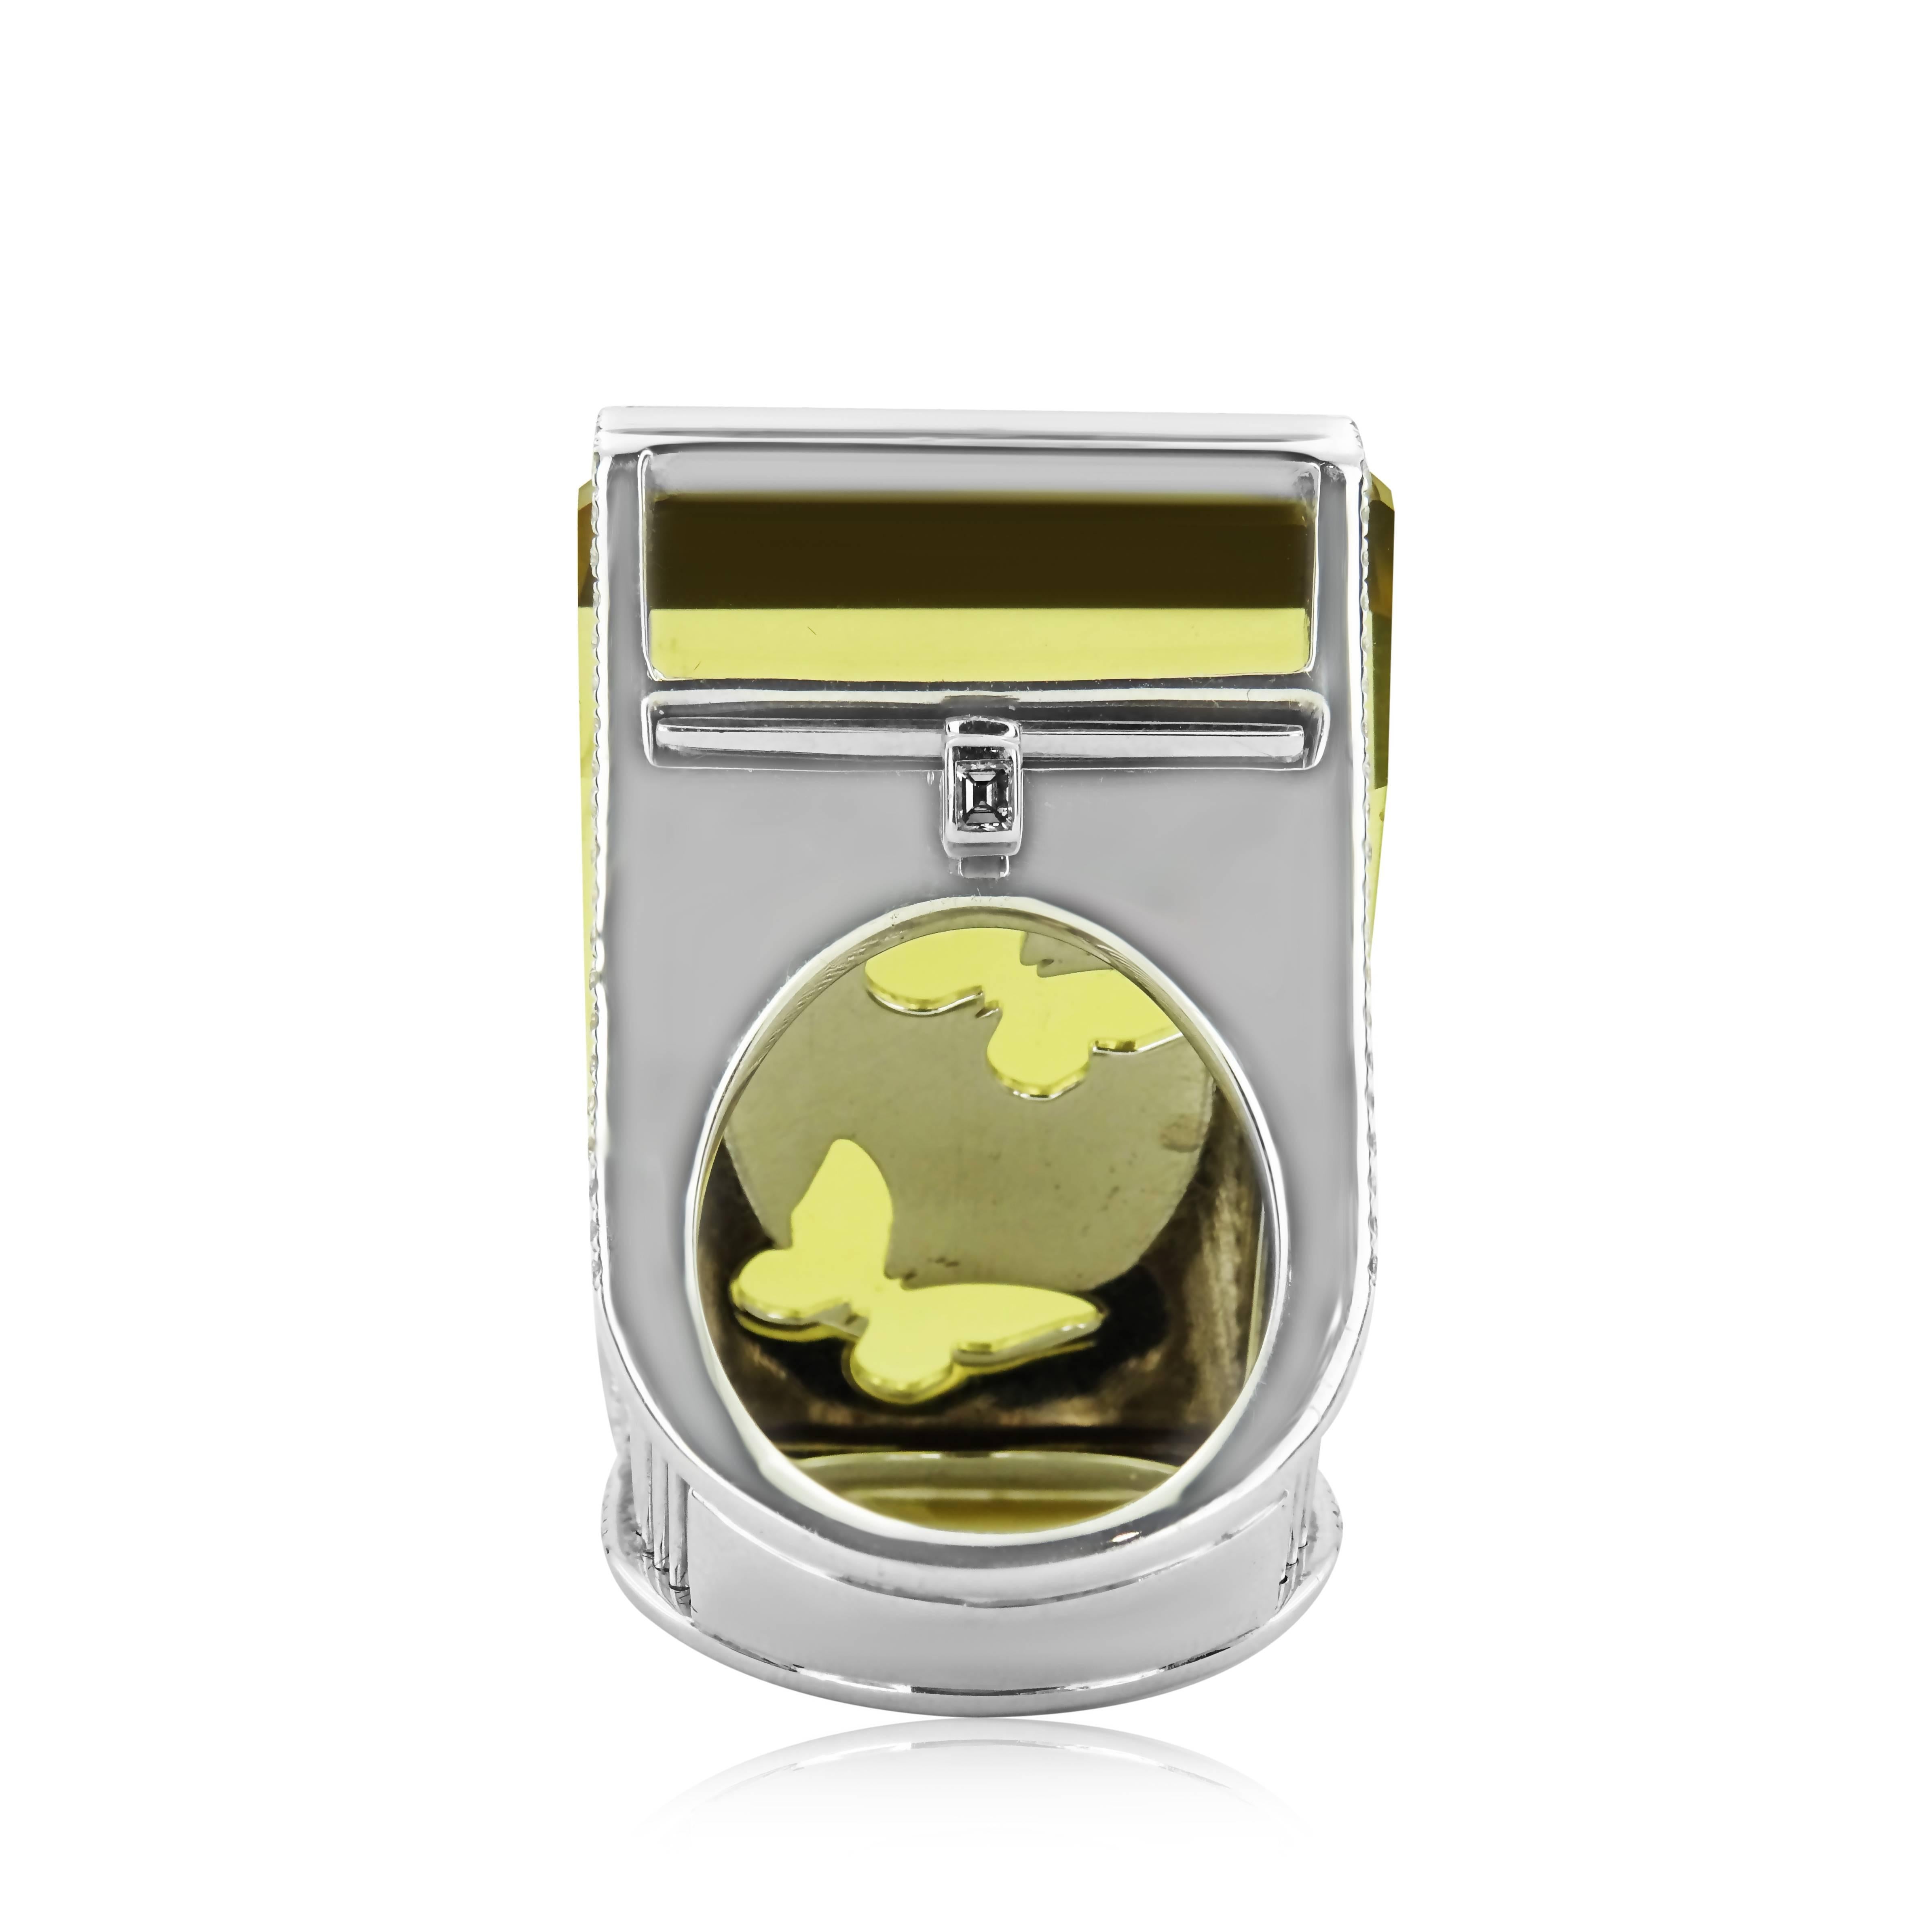 WHITE GOLD LEMON QUARTZ RING - 63.26 CT

Set in 18K White gold


Total lemon quartz weight: 62.12 ct


Total diamond weight: 1.14 ct
Color: F
Clarity: VS
Total ring weight: 53.42 grams